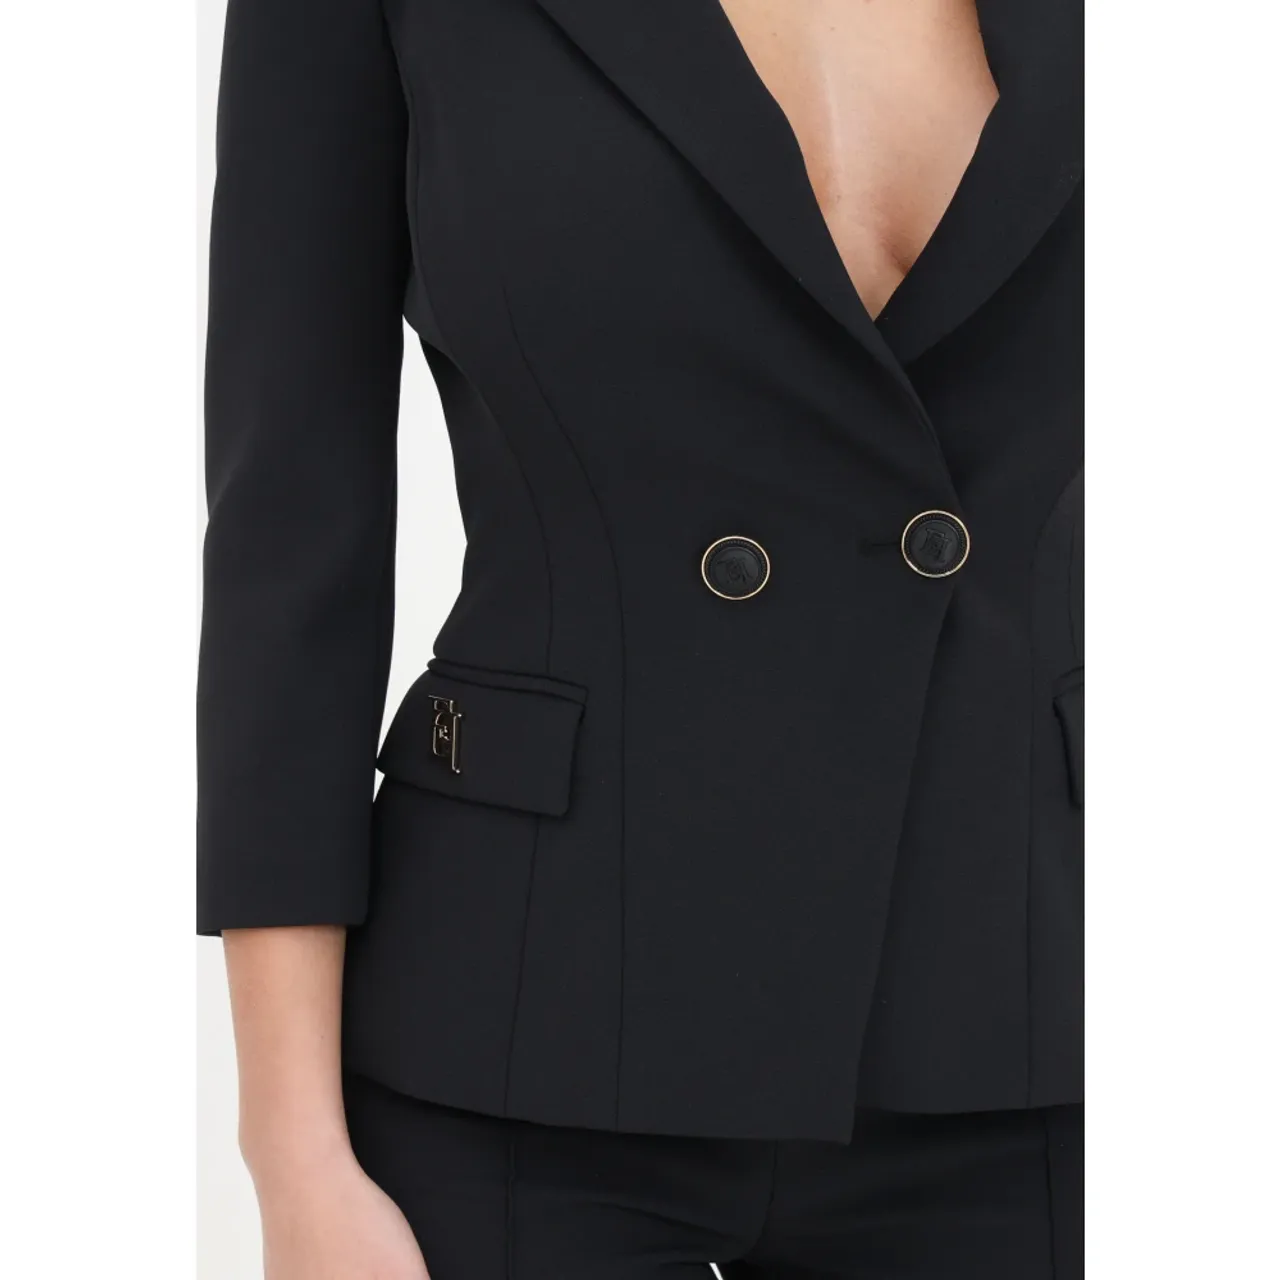 Schwarze doppelreihige Crêpe-Jacke mit Logo,Schwarze Jacken für Frauen Elisabetta Franchi